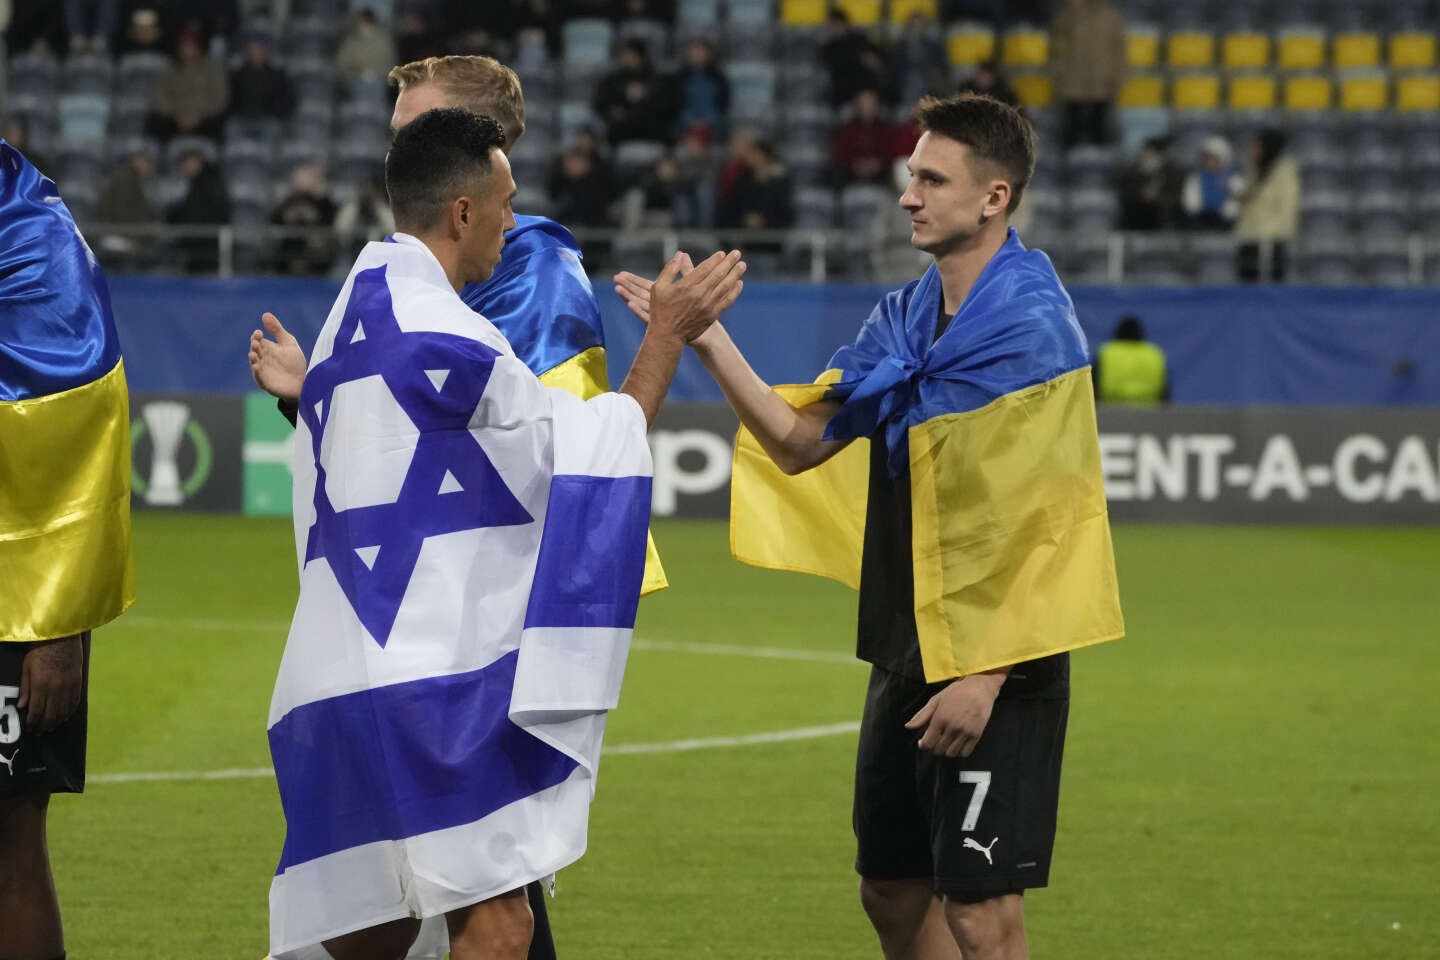 Mecz Pucharu Europy pomiędzy klubami izraelskimi i ukraińskimi został zmuszony do wyjazdu na wygnanie